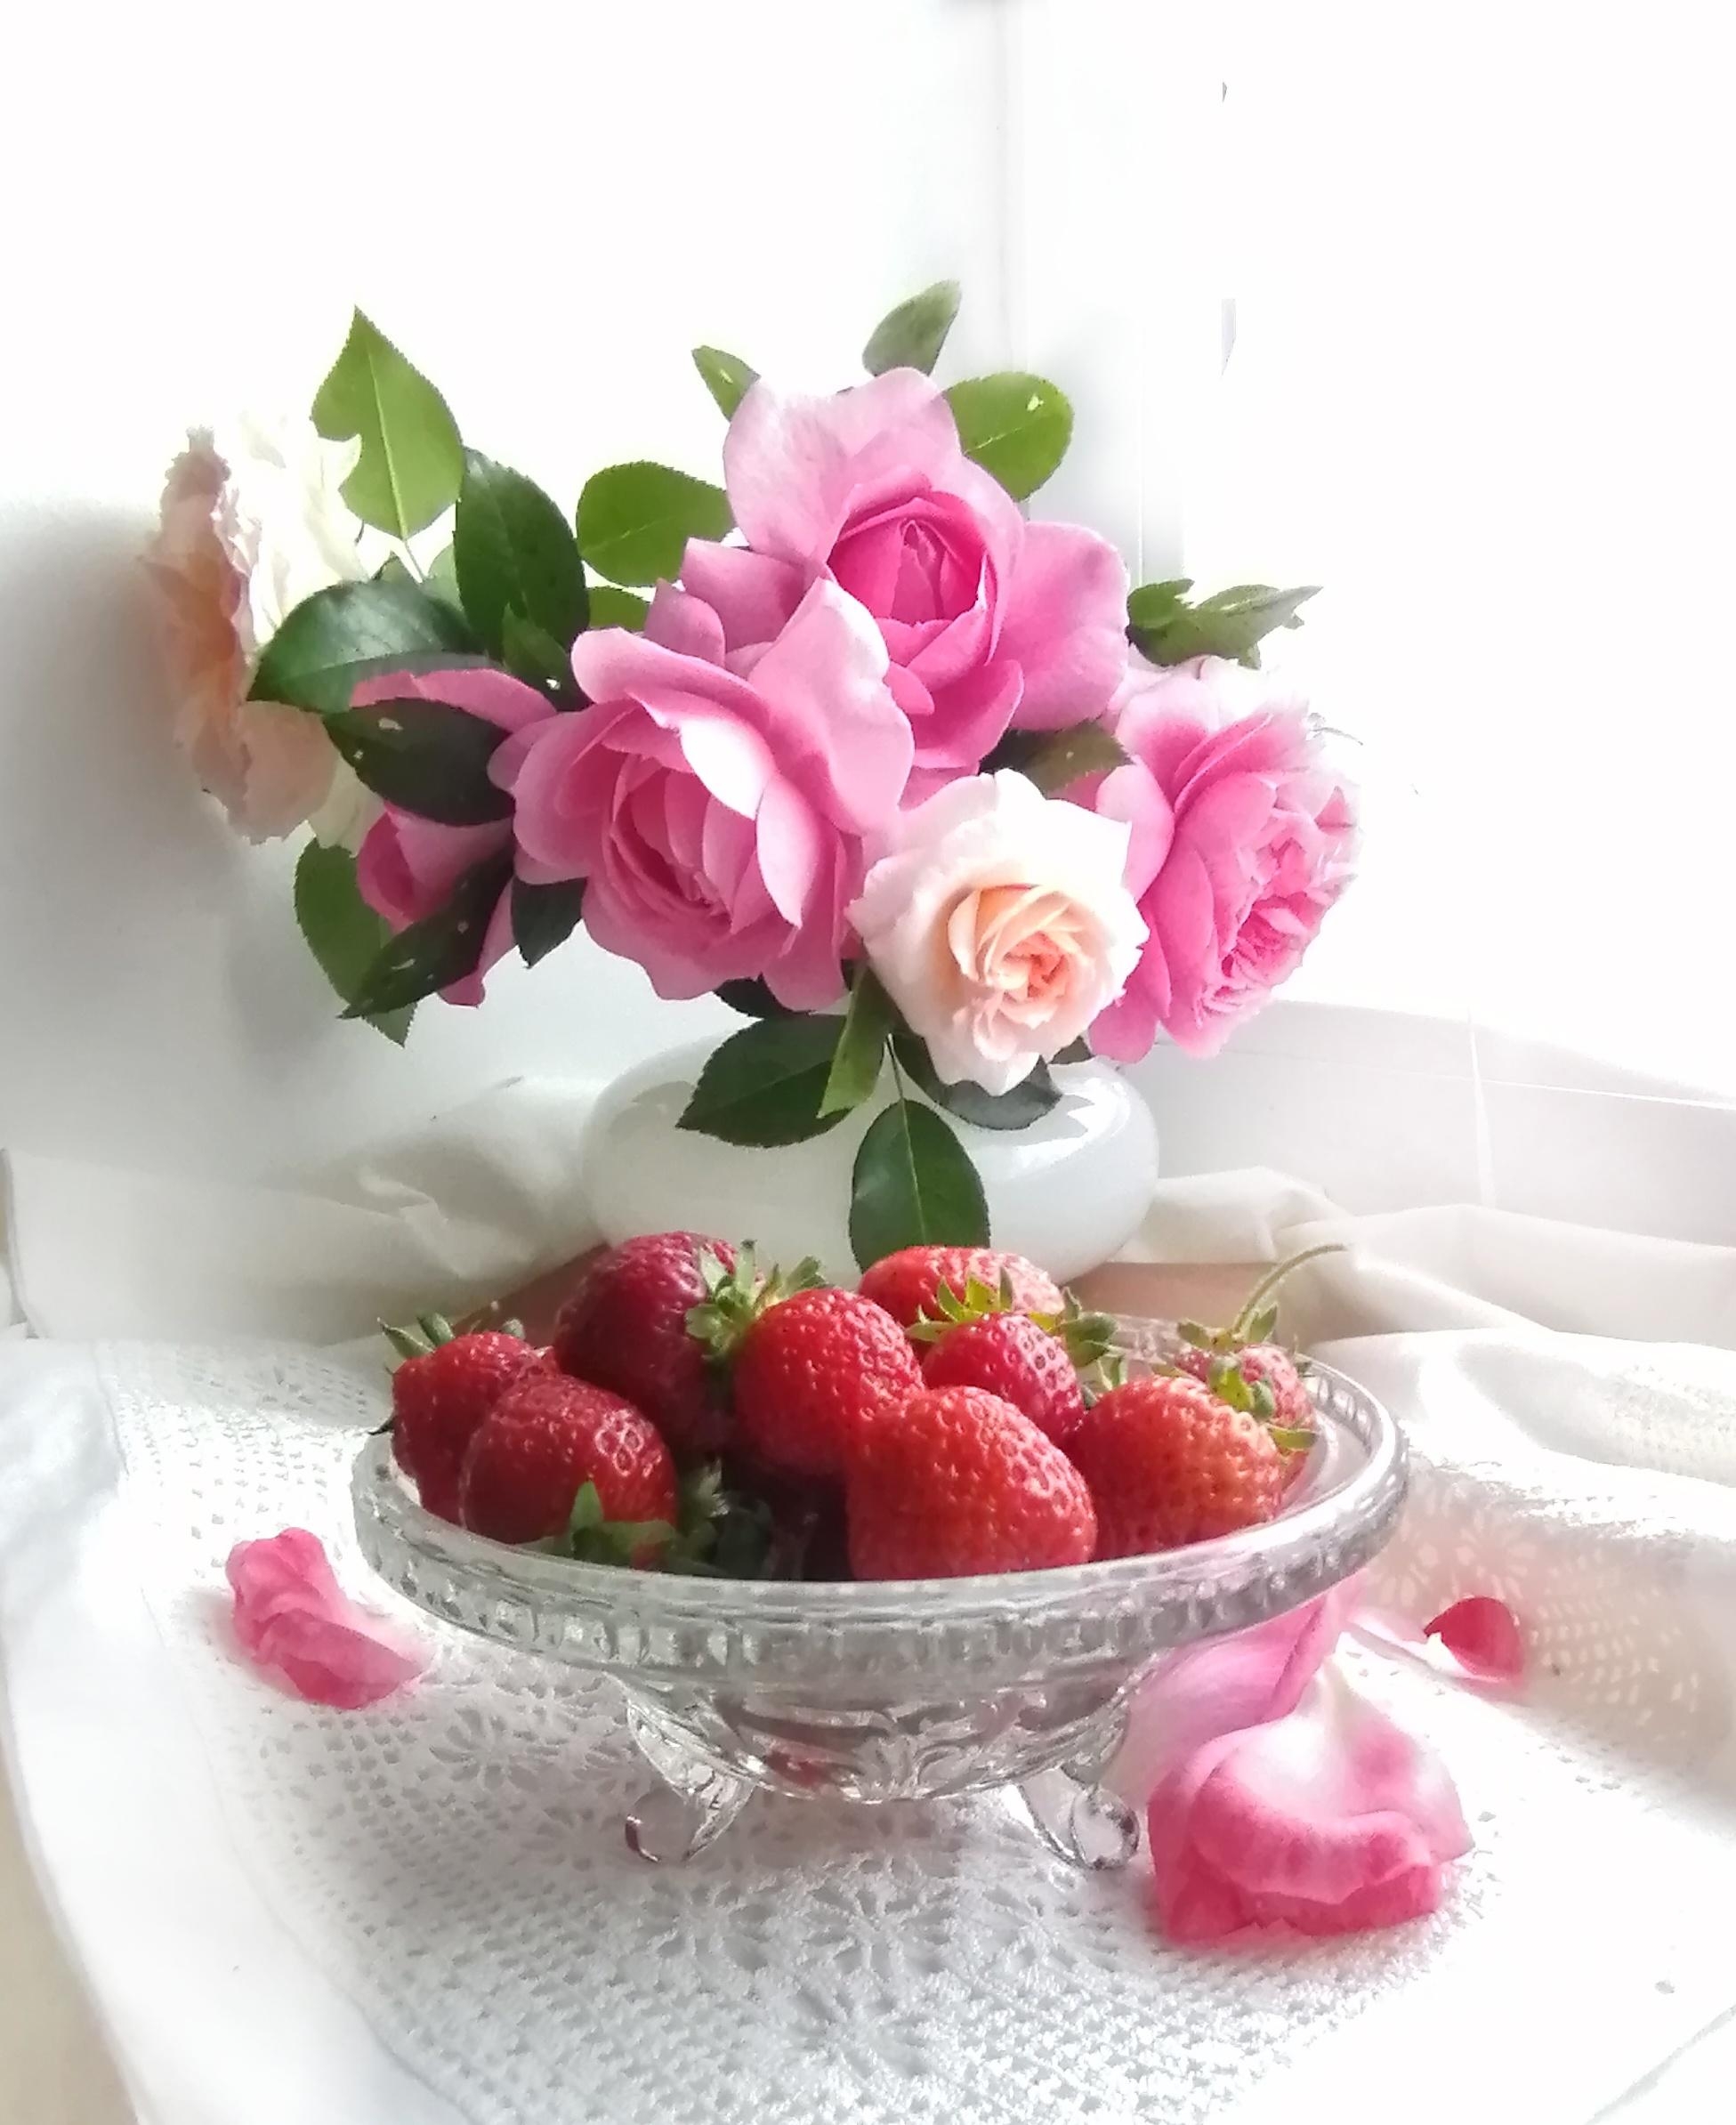 Gartenglück😊#rosen#blumendeko#fresflowerfriday#Erdbeeren 